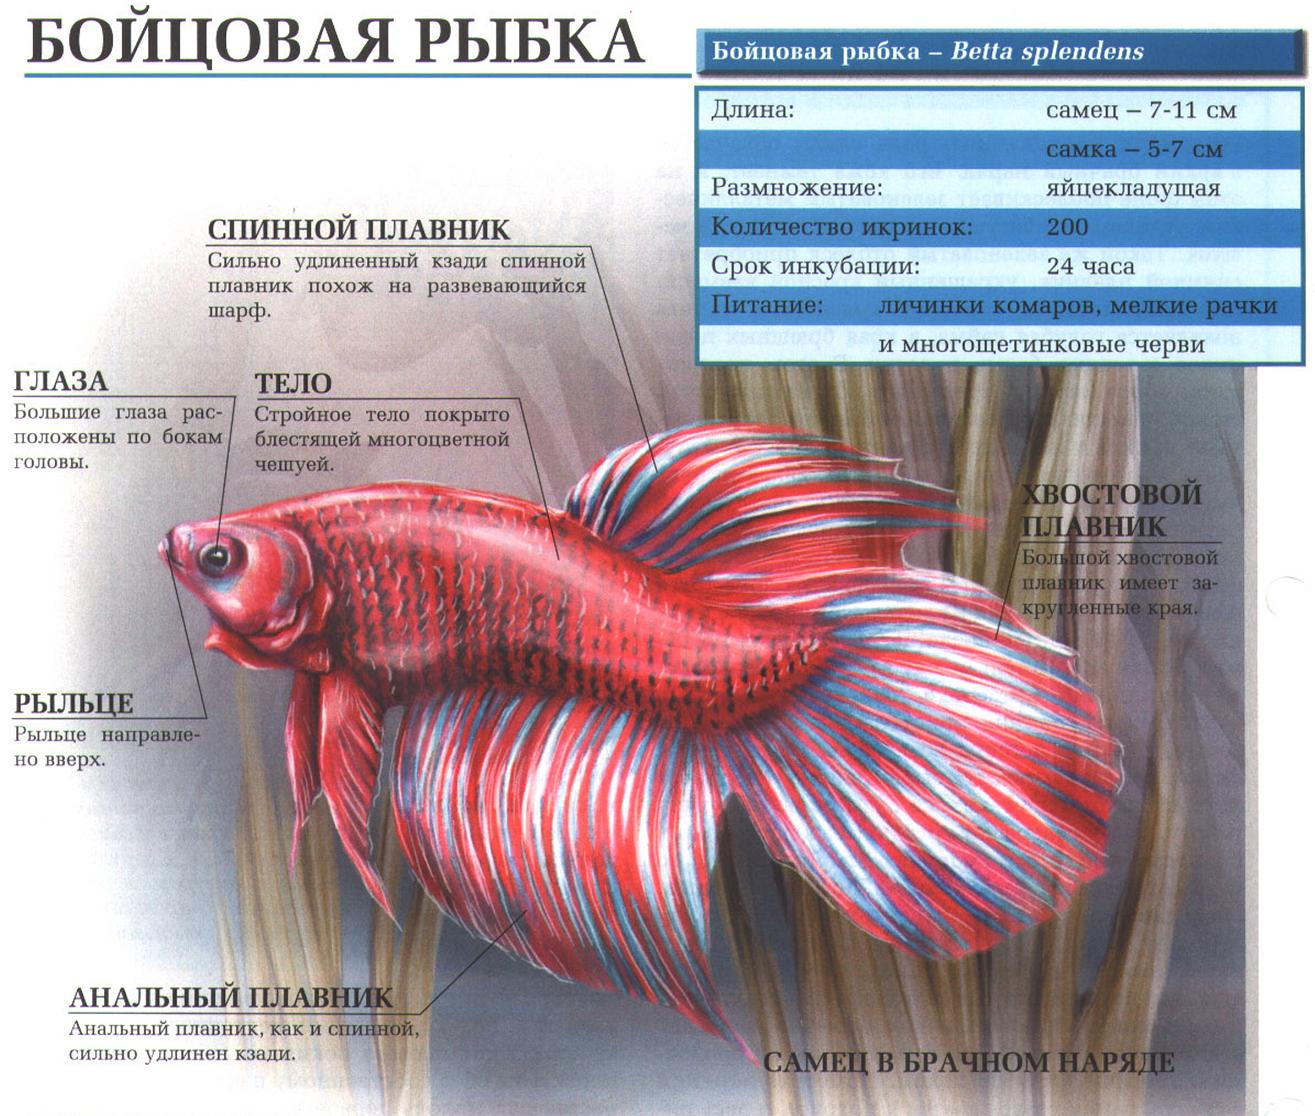 Описание бойцовской рыбки.